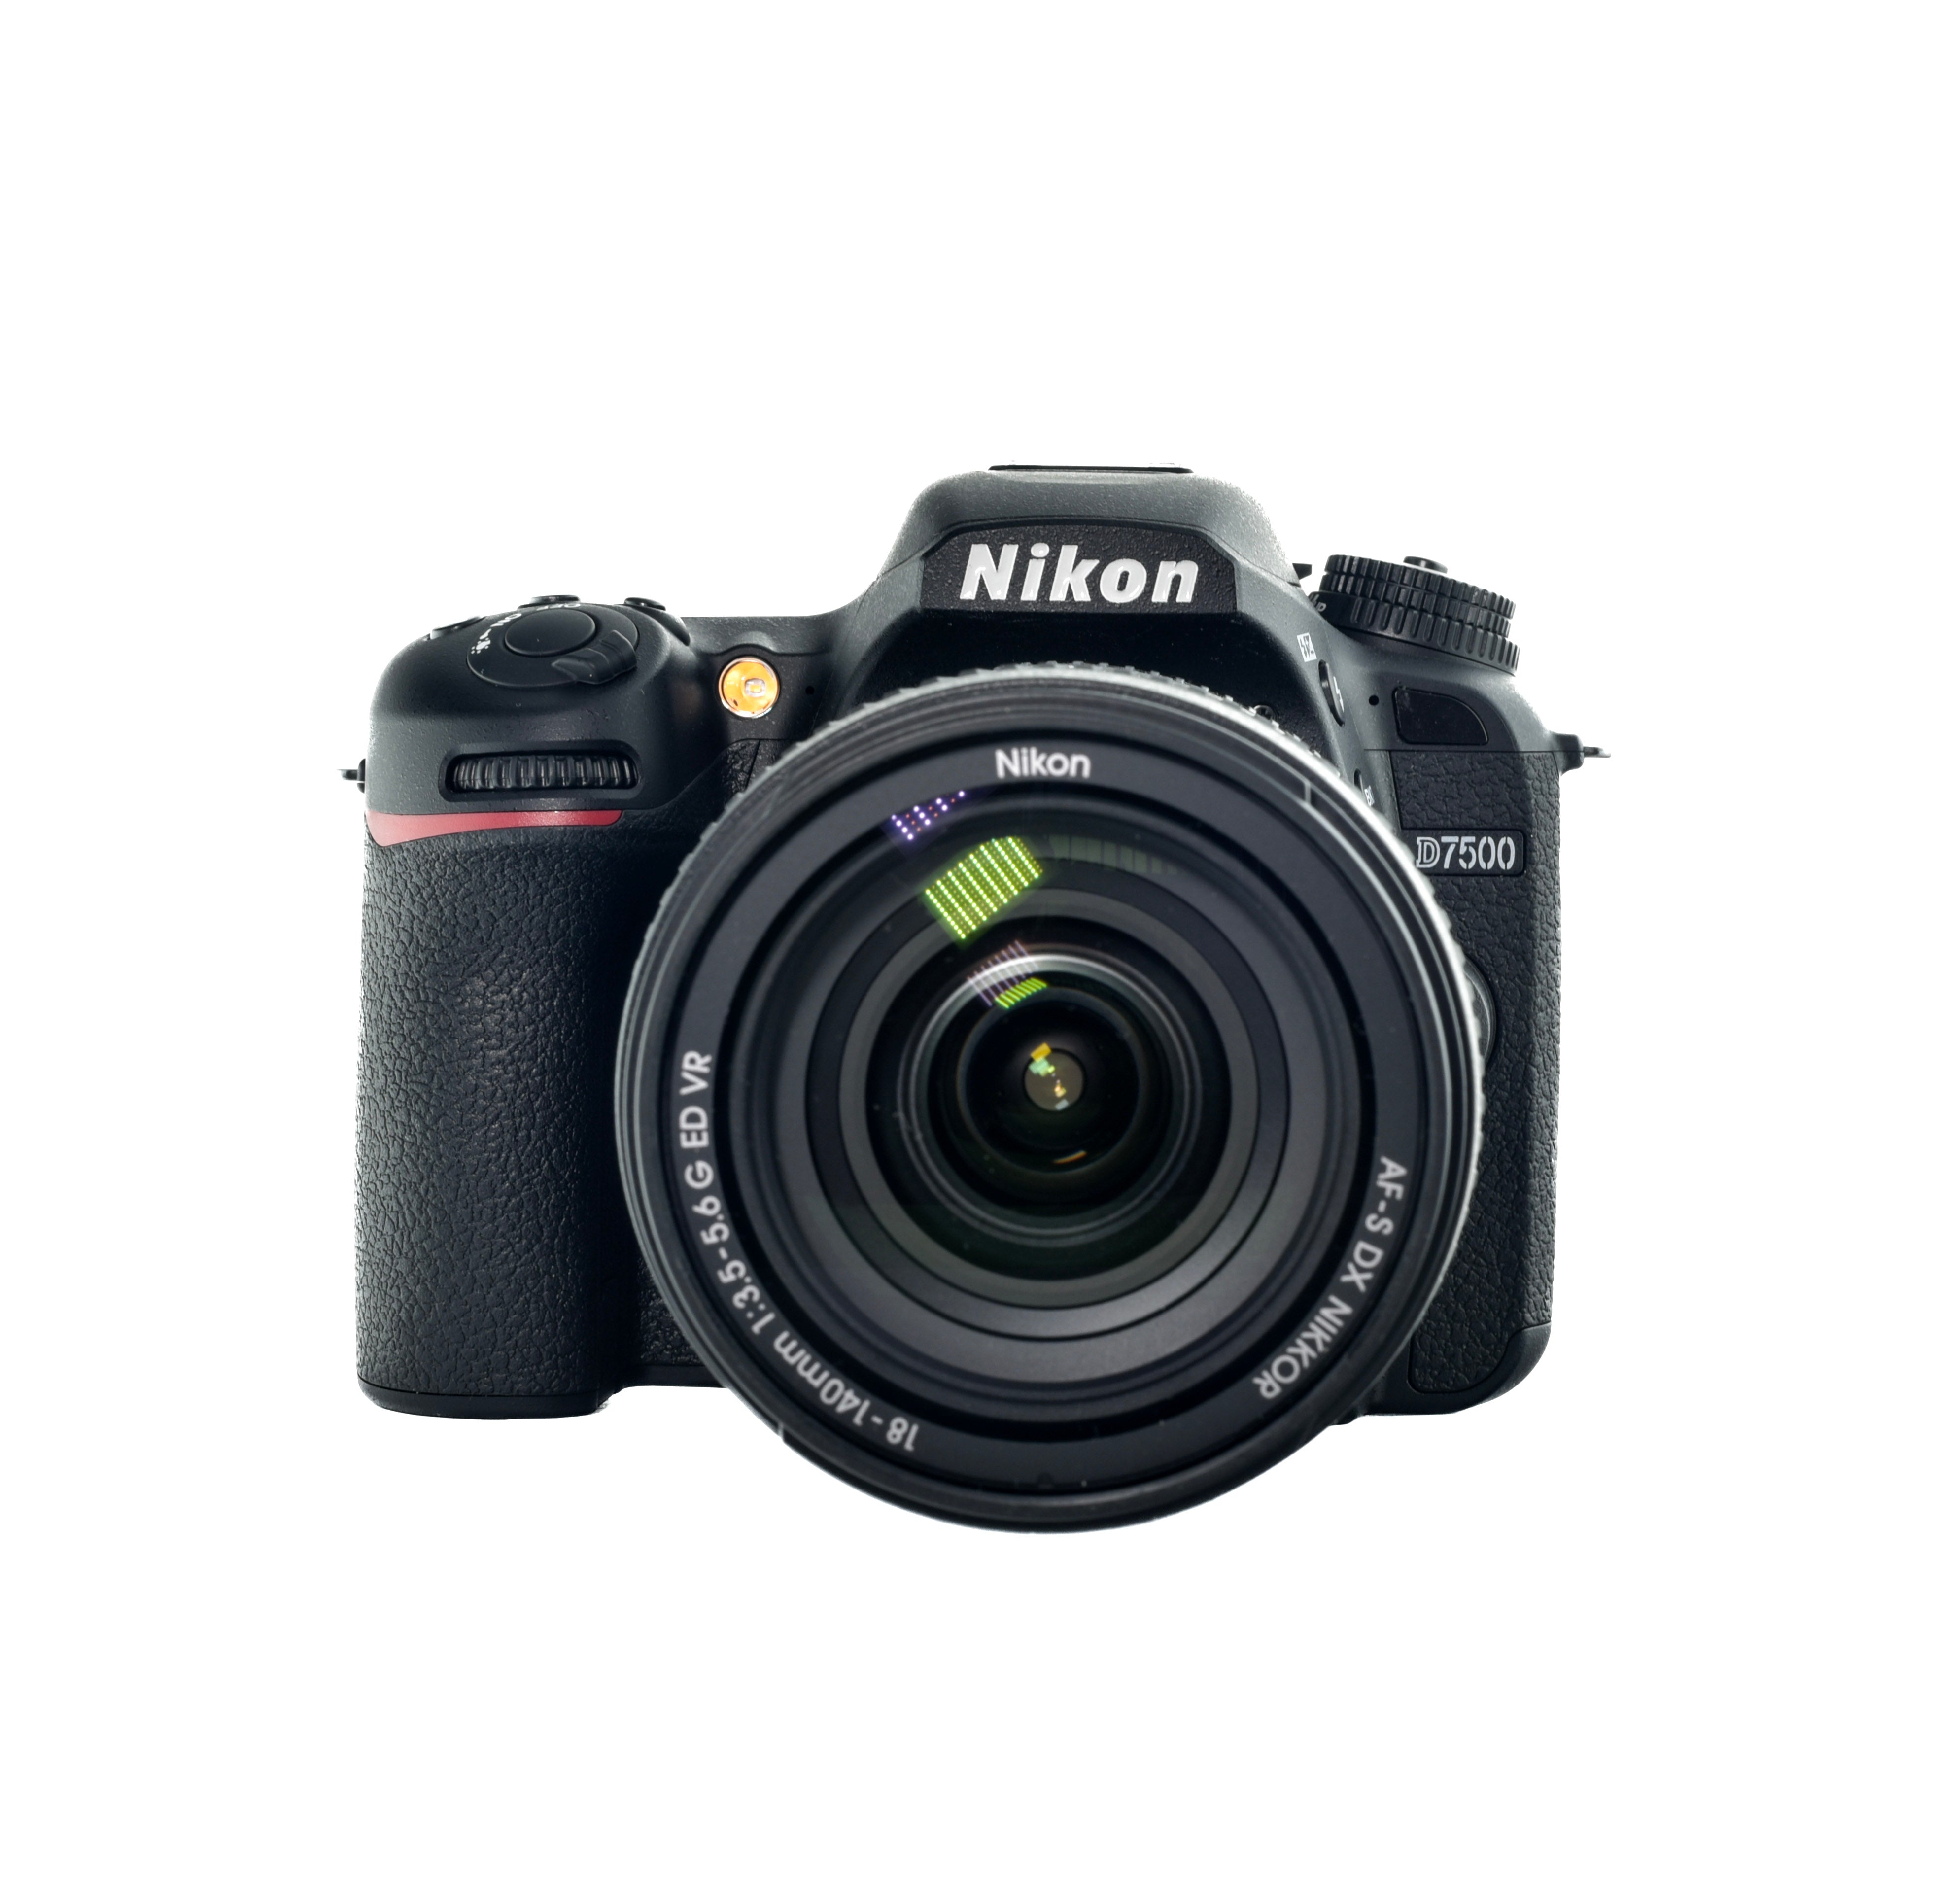 Nikon D7500 Dslr Camera & 18-140mm f3.5-5.6G ED VR lens